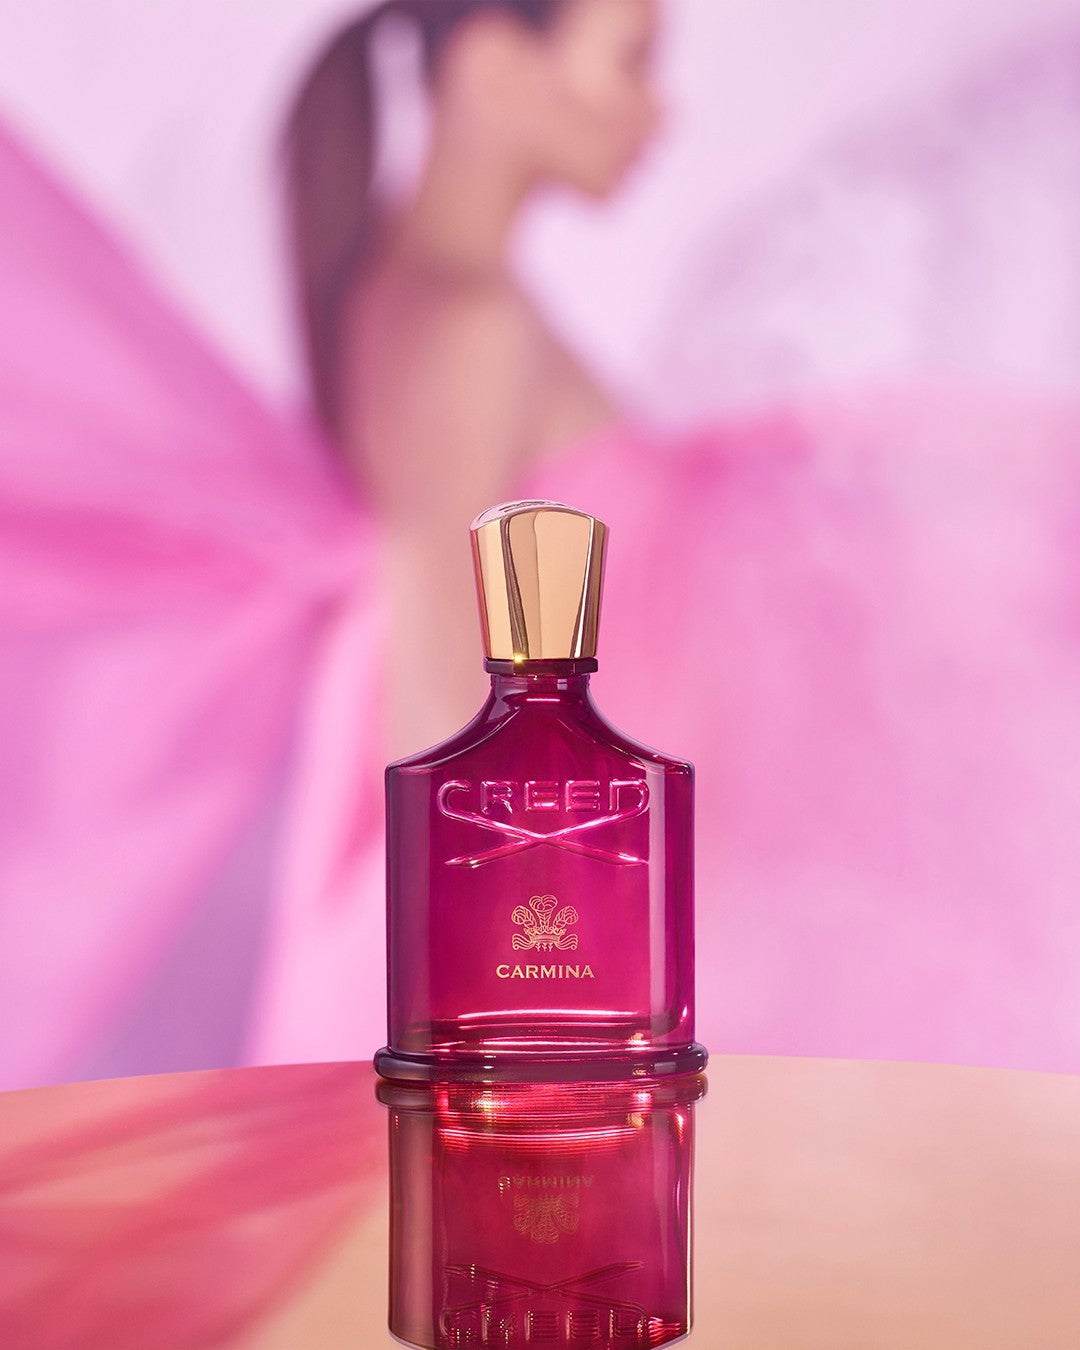 Carmina by Creed, Feminine fragrance 